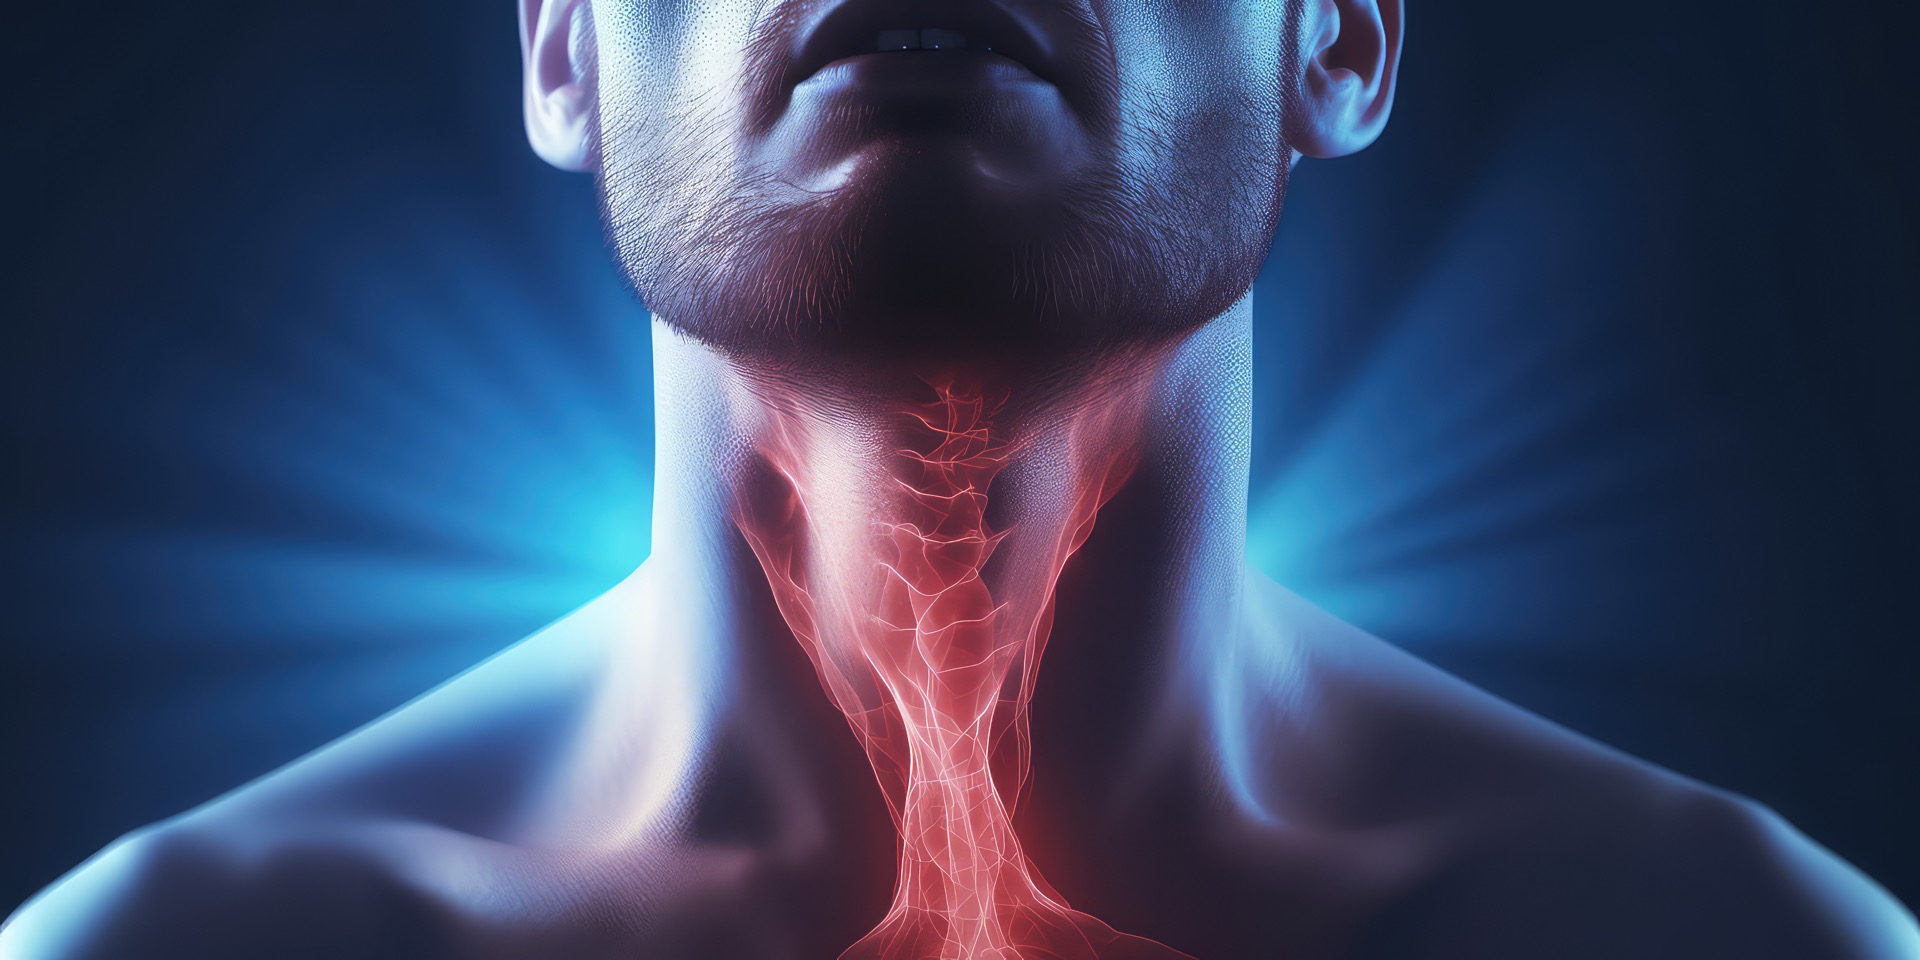 Le pharynx, couramment appelé gorge, se situe dans le cou, au carrefour de la tête et du tronc. Il fait partie du système respiratoire et du système digestif. © SnowElf, Adobe Stock 